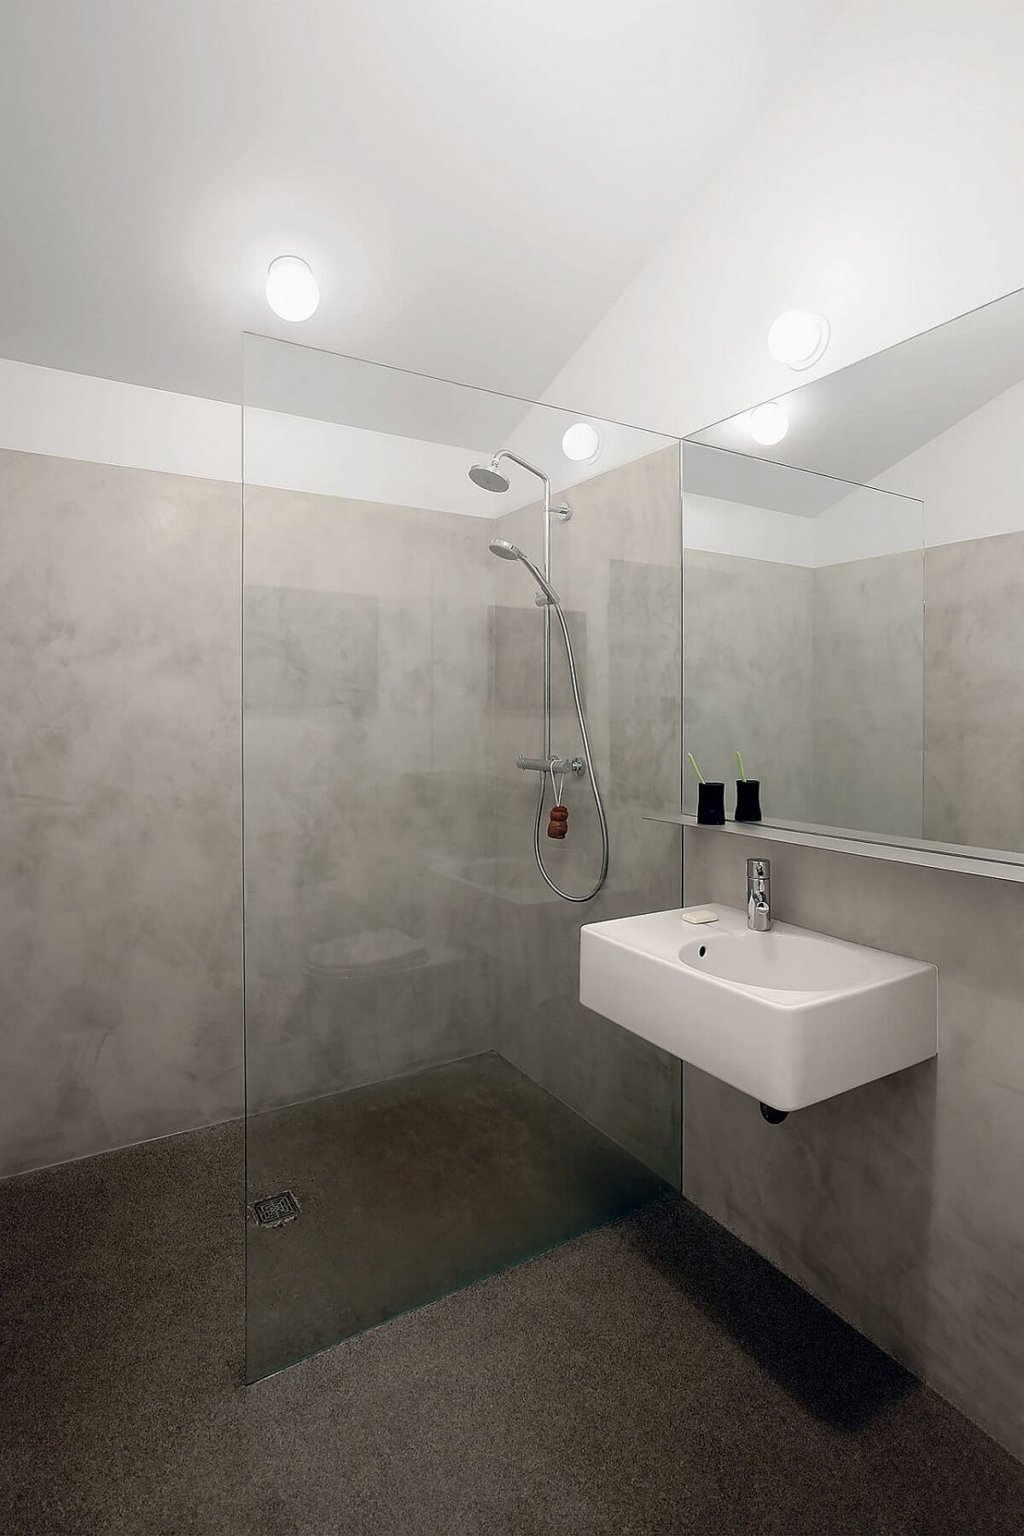 Phòng tắm, khu vực vệ sinh trong nhà phụ được thiết kế và bài trí theo phong cách hiện đại, tối giản với tông màu xám trắng chủ đạo.